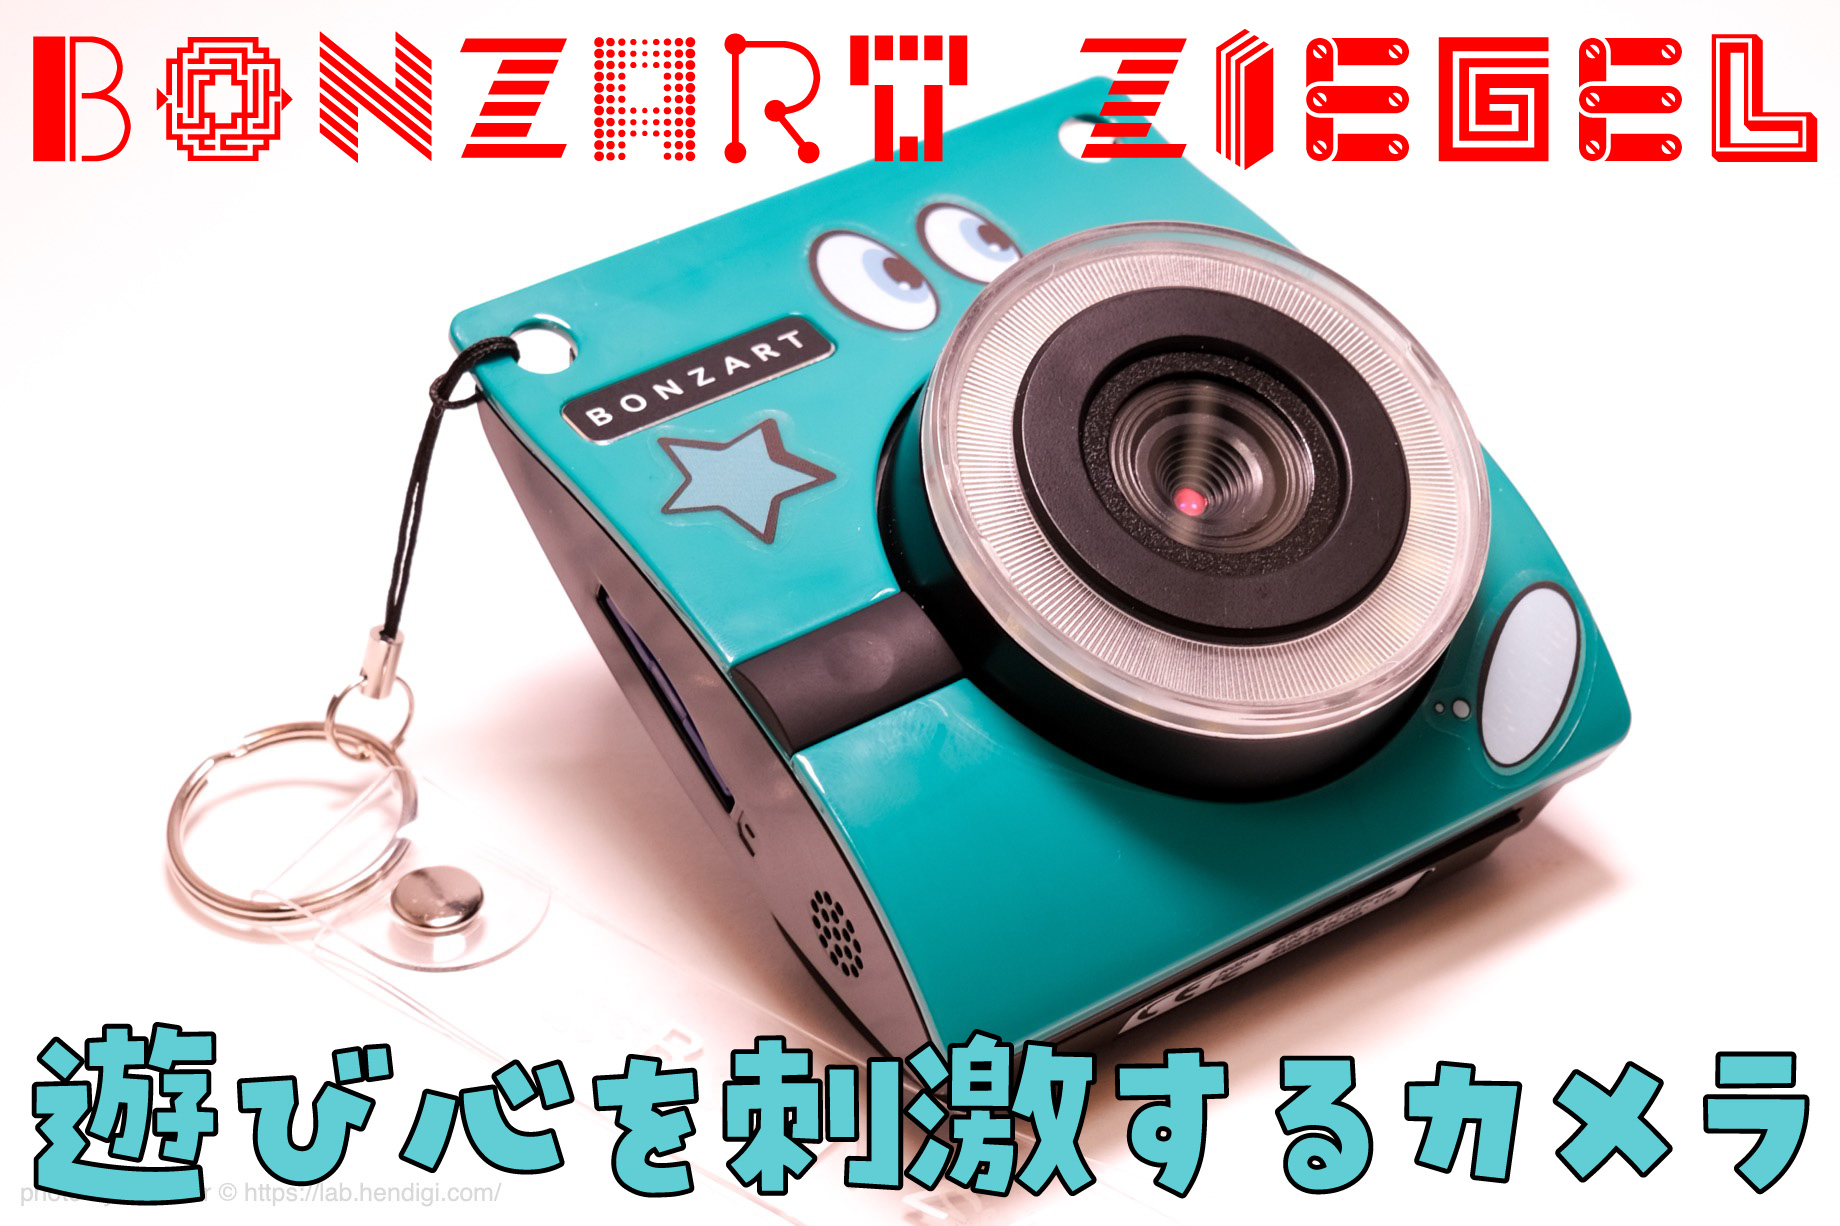 13000円 華麗 トイカメラ BONZART ZIEGEL ブラック コンバージョンレンズ セット